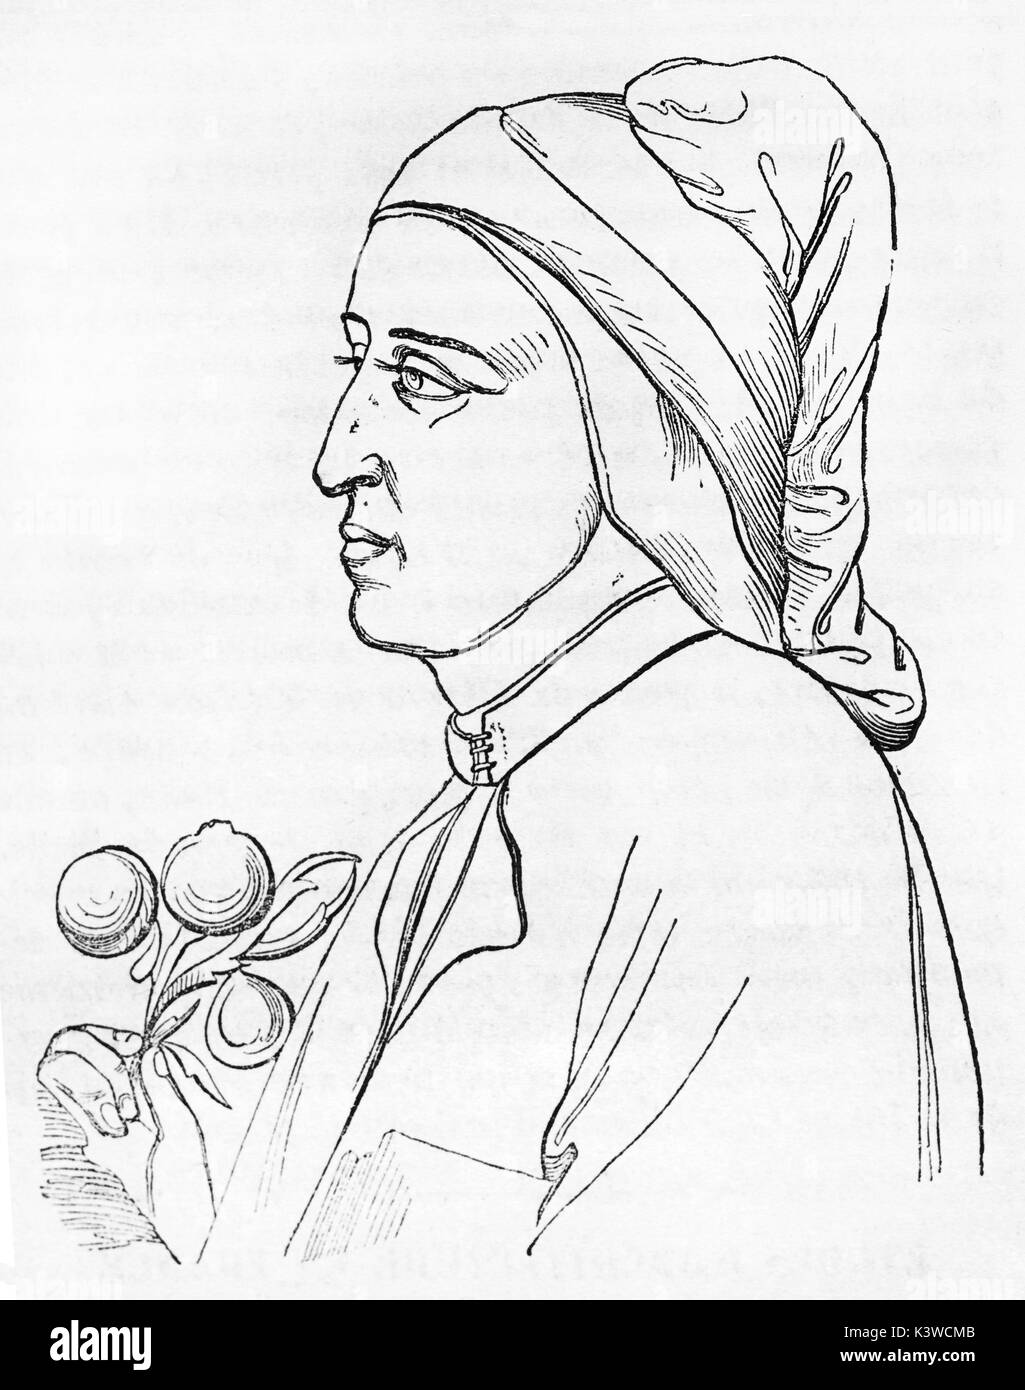 Ancienne enragved portrait de Dante Alighieri (1265 - 1321), grand poète italien. Après la peinture de Giotto, publié le Magasin Pittoresque, Paris, 1841 Banque D'Images